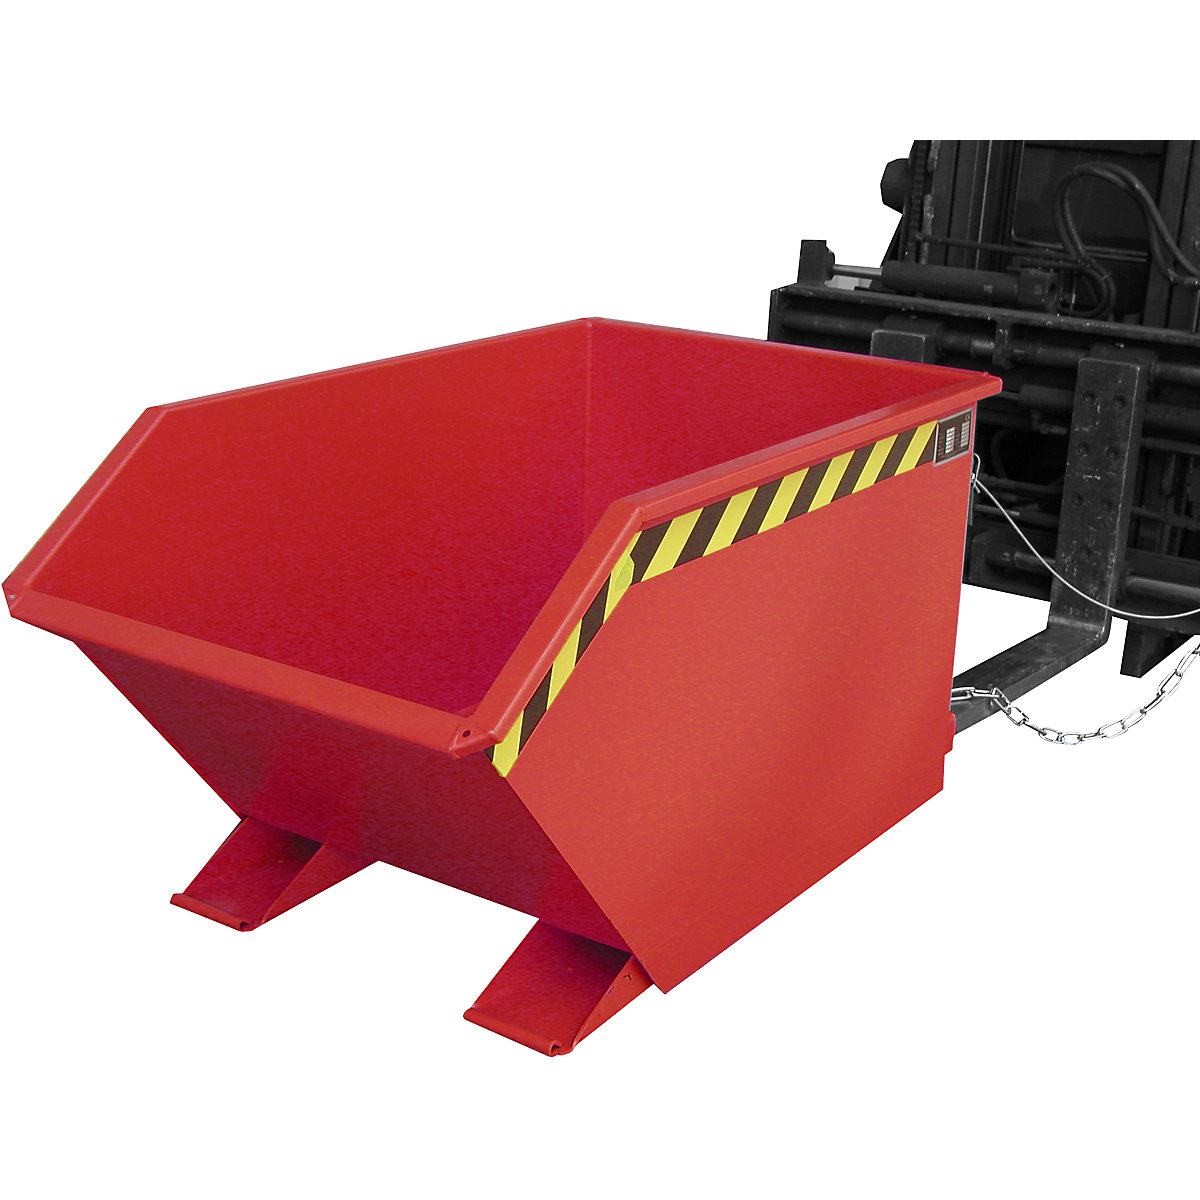 EUROKRAFTpro – Contenitore ribaltabile, versione bassa (E), capacità 0,5 m³, rosso fuoco